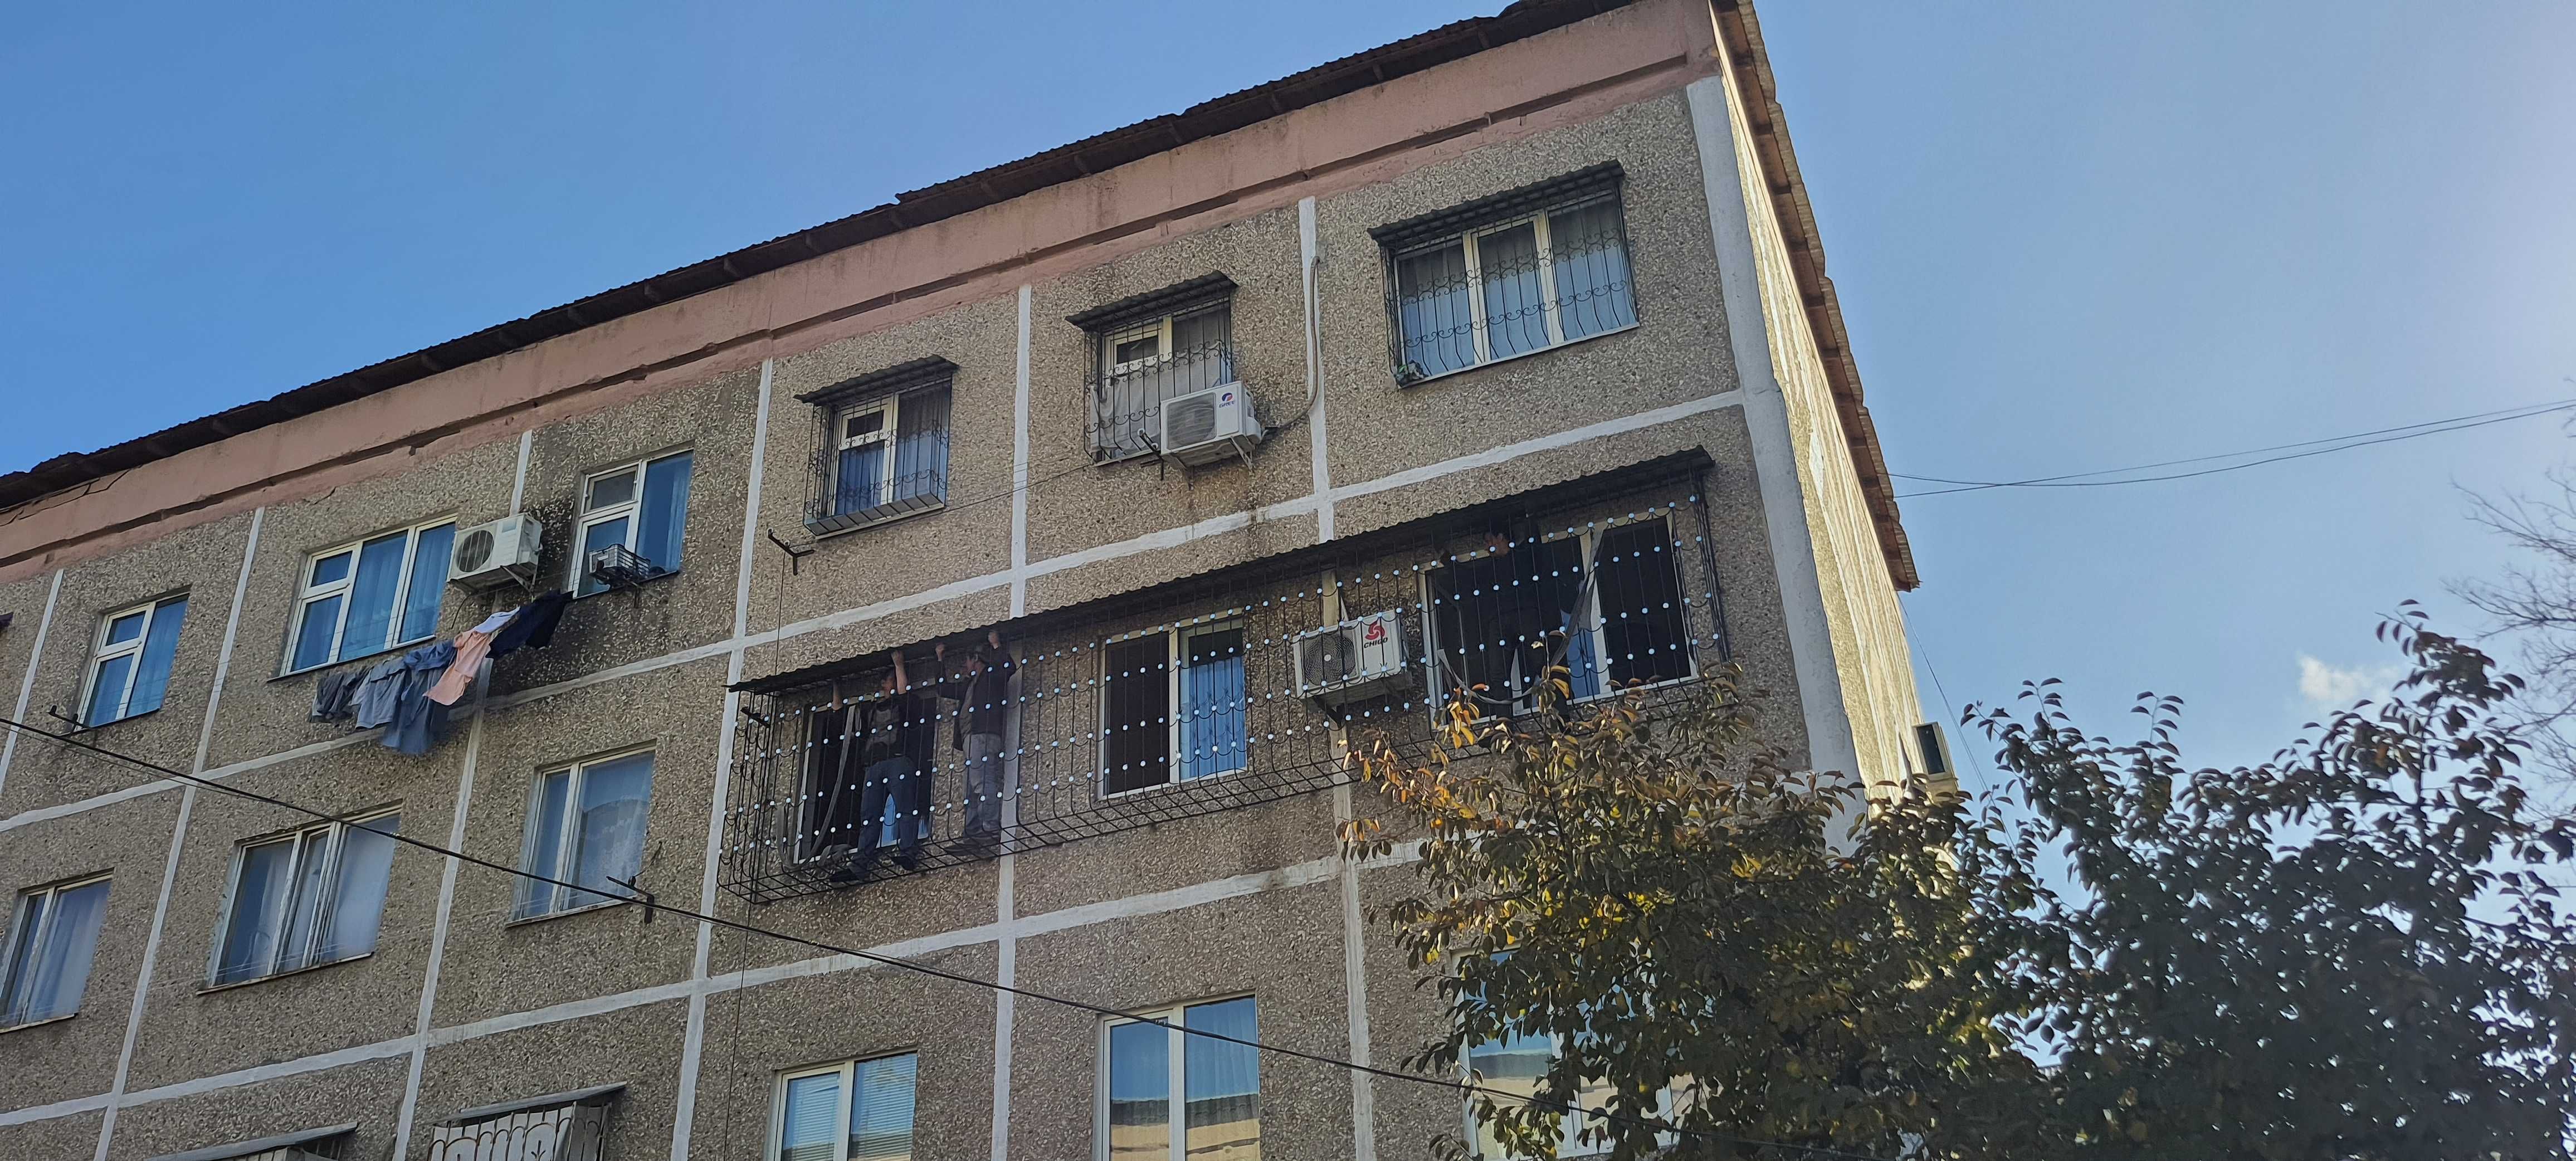 РЕШЕТКИ на окна,НЕДОРОГО перила навес ришотка panjara kovka козырьки